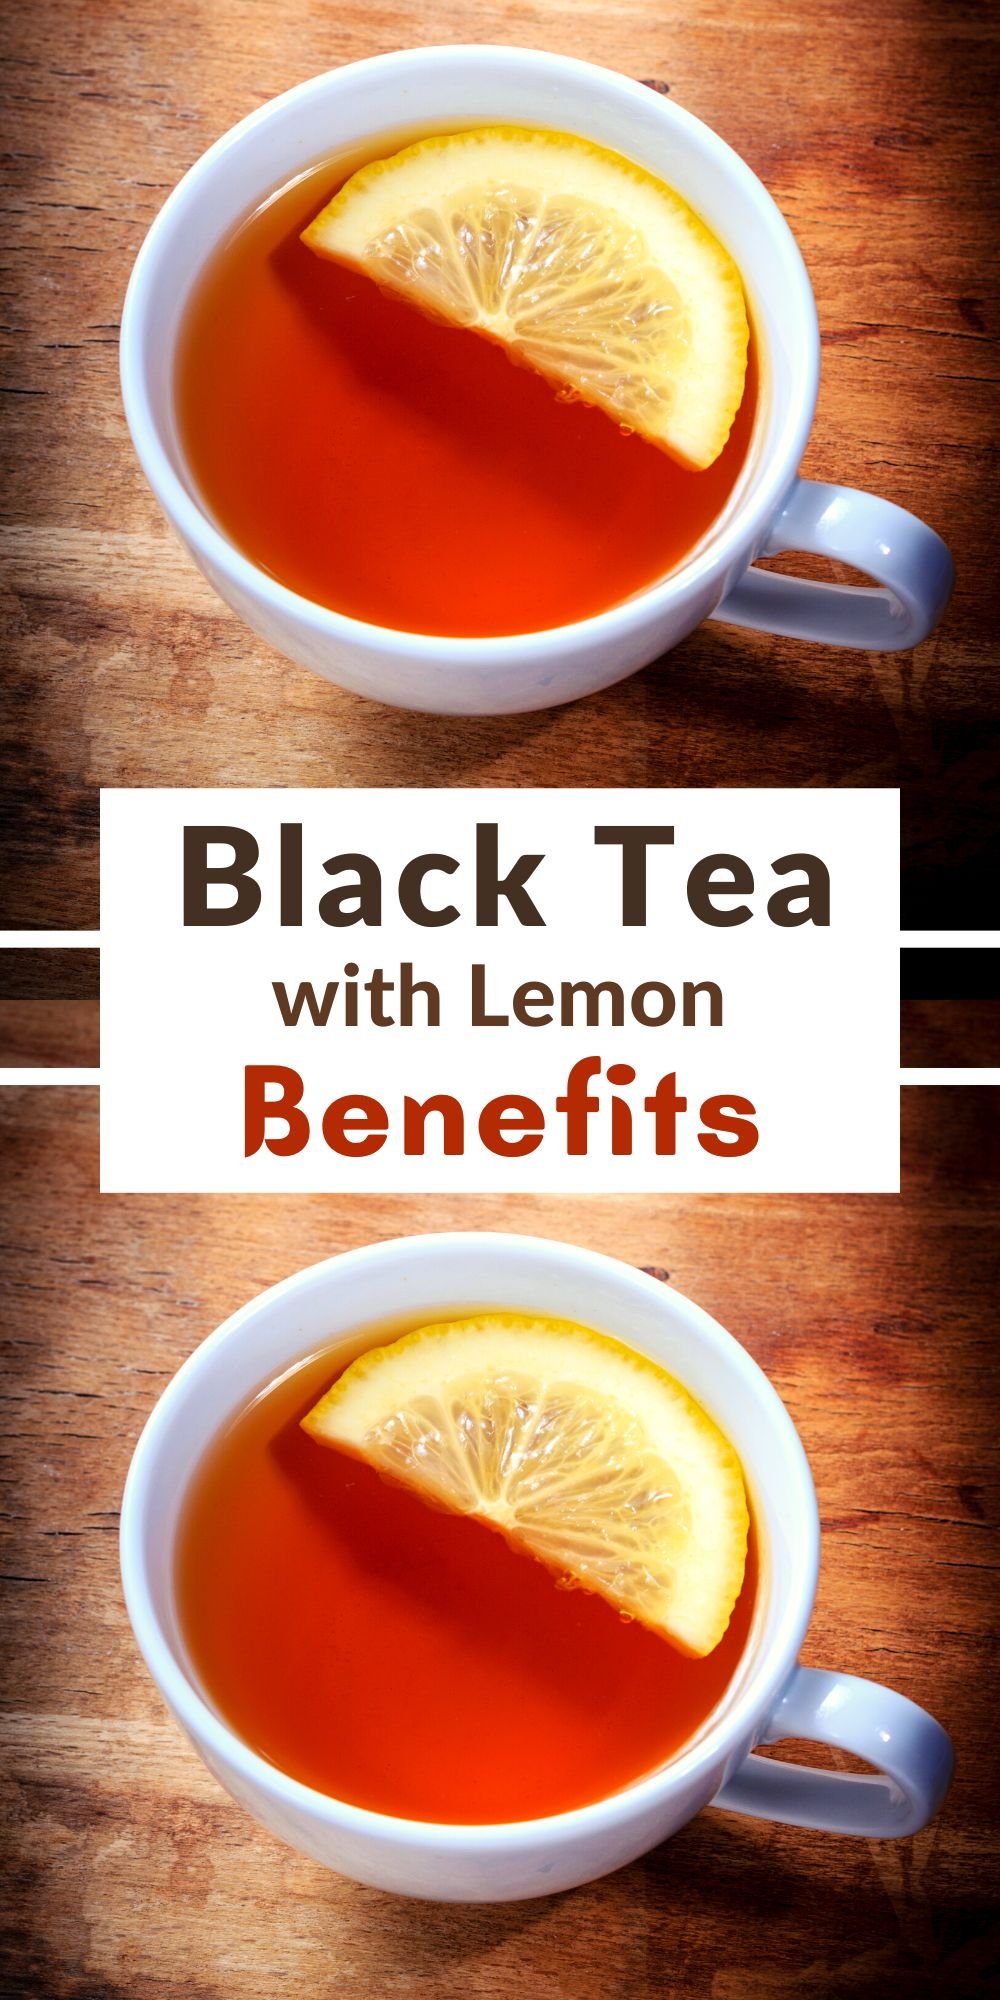 Black Tea with Lemon